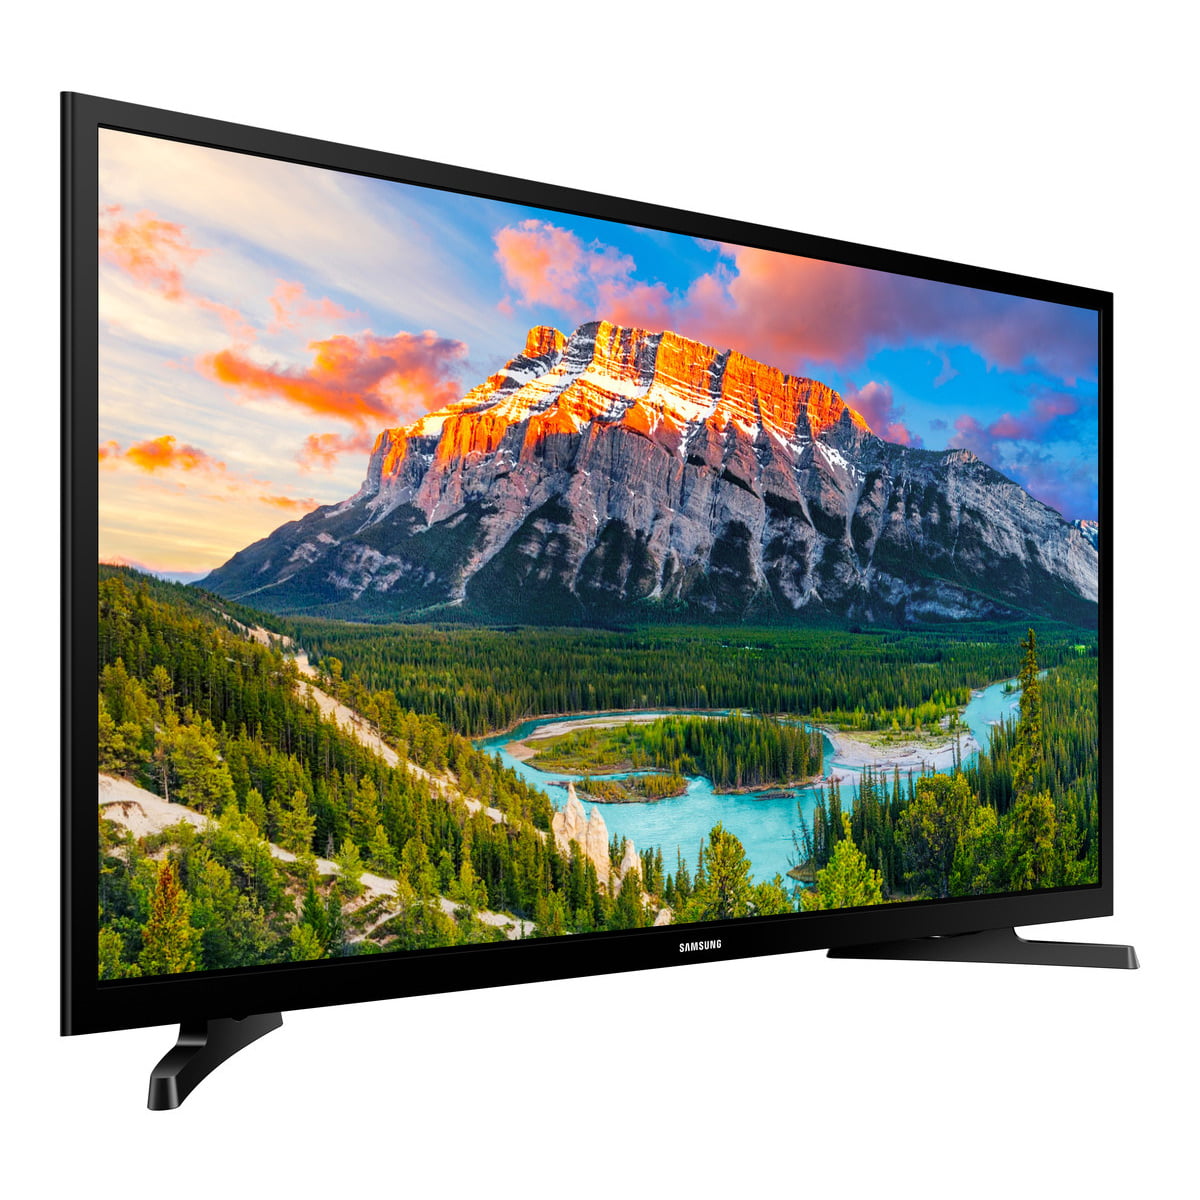 go shopping Establish ability SAMSUNG 32" Class FHD (1080P) Smart LED TV (UN32N5300) - Walmart.com